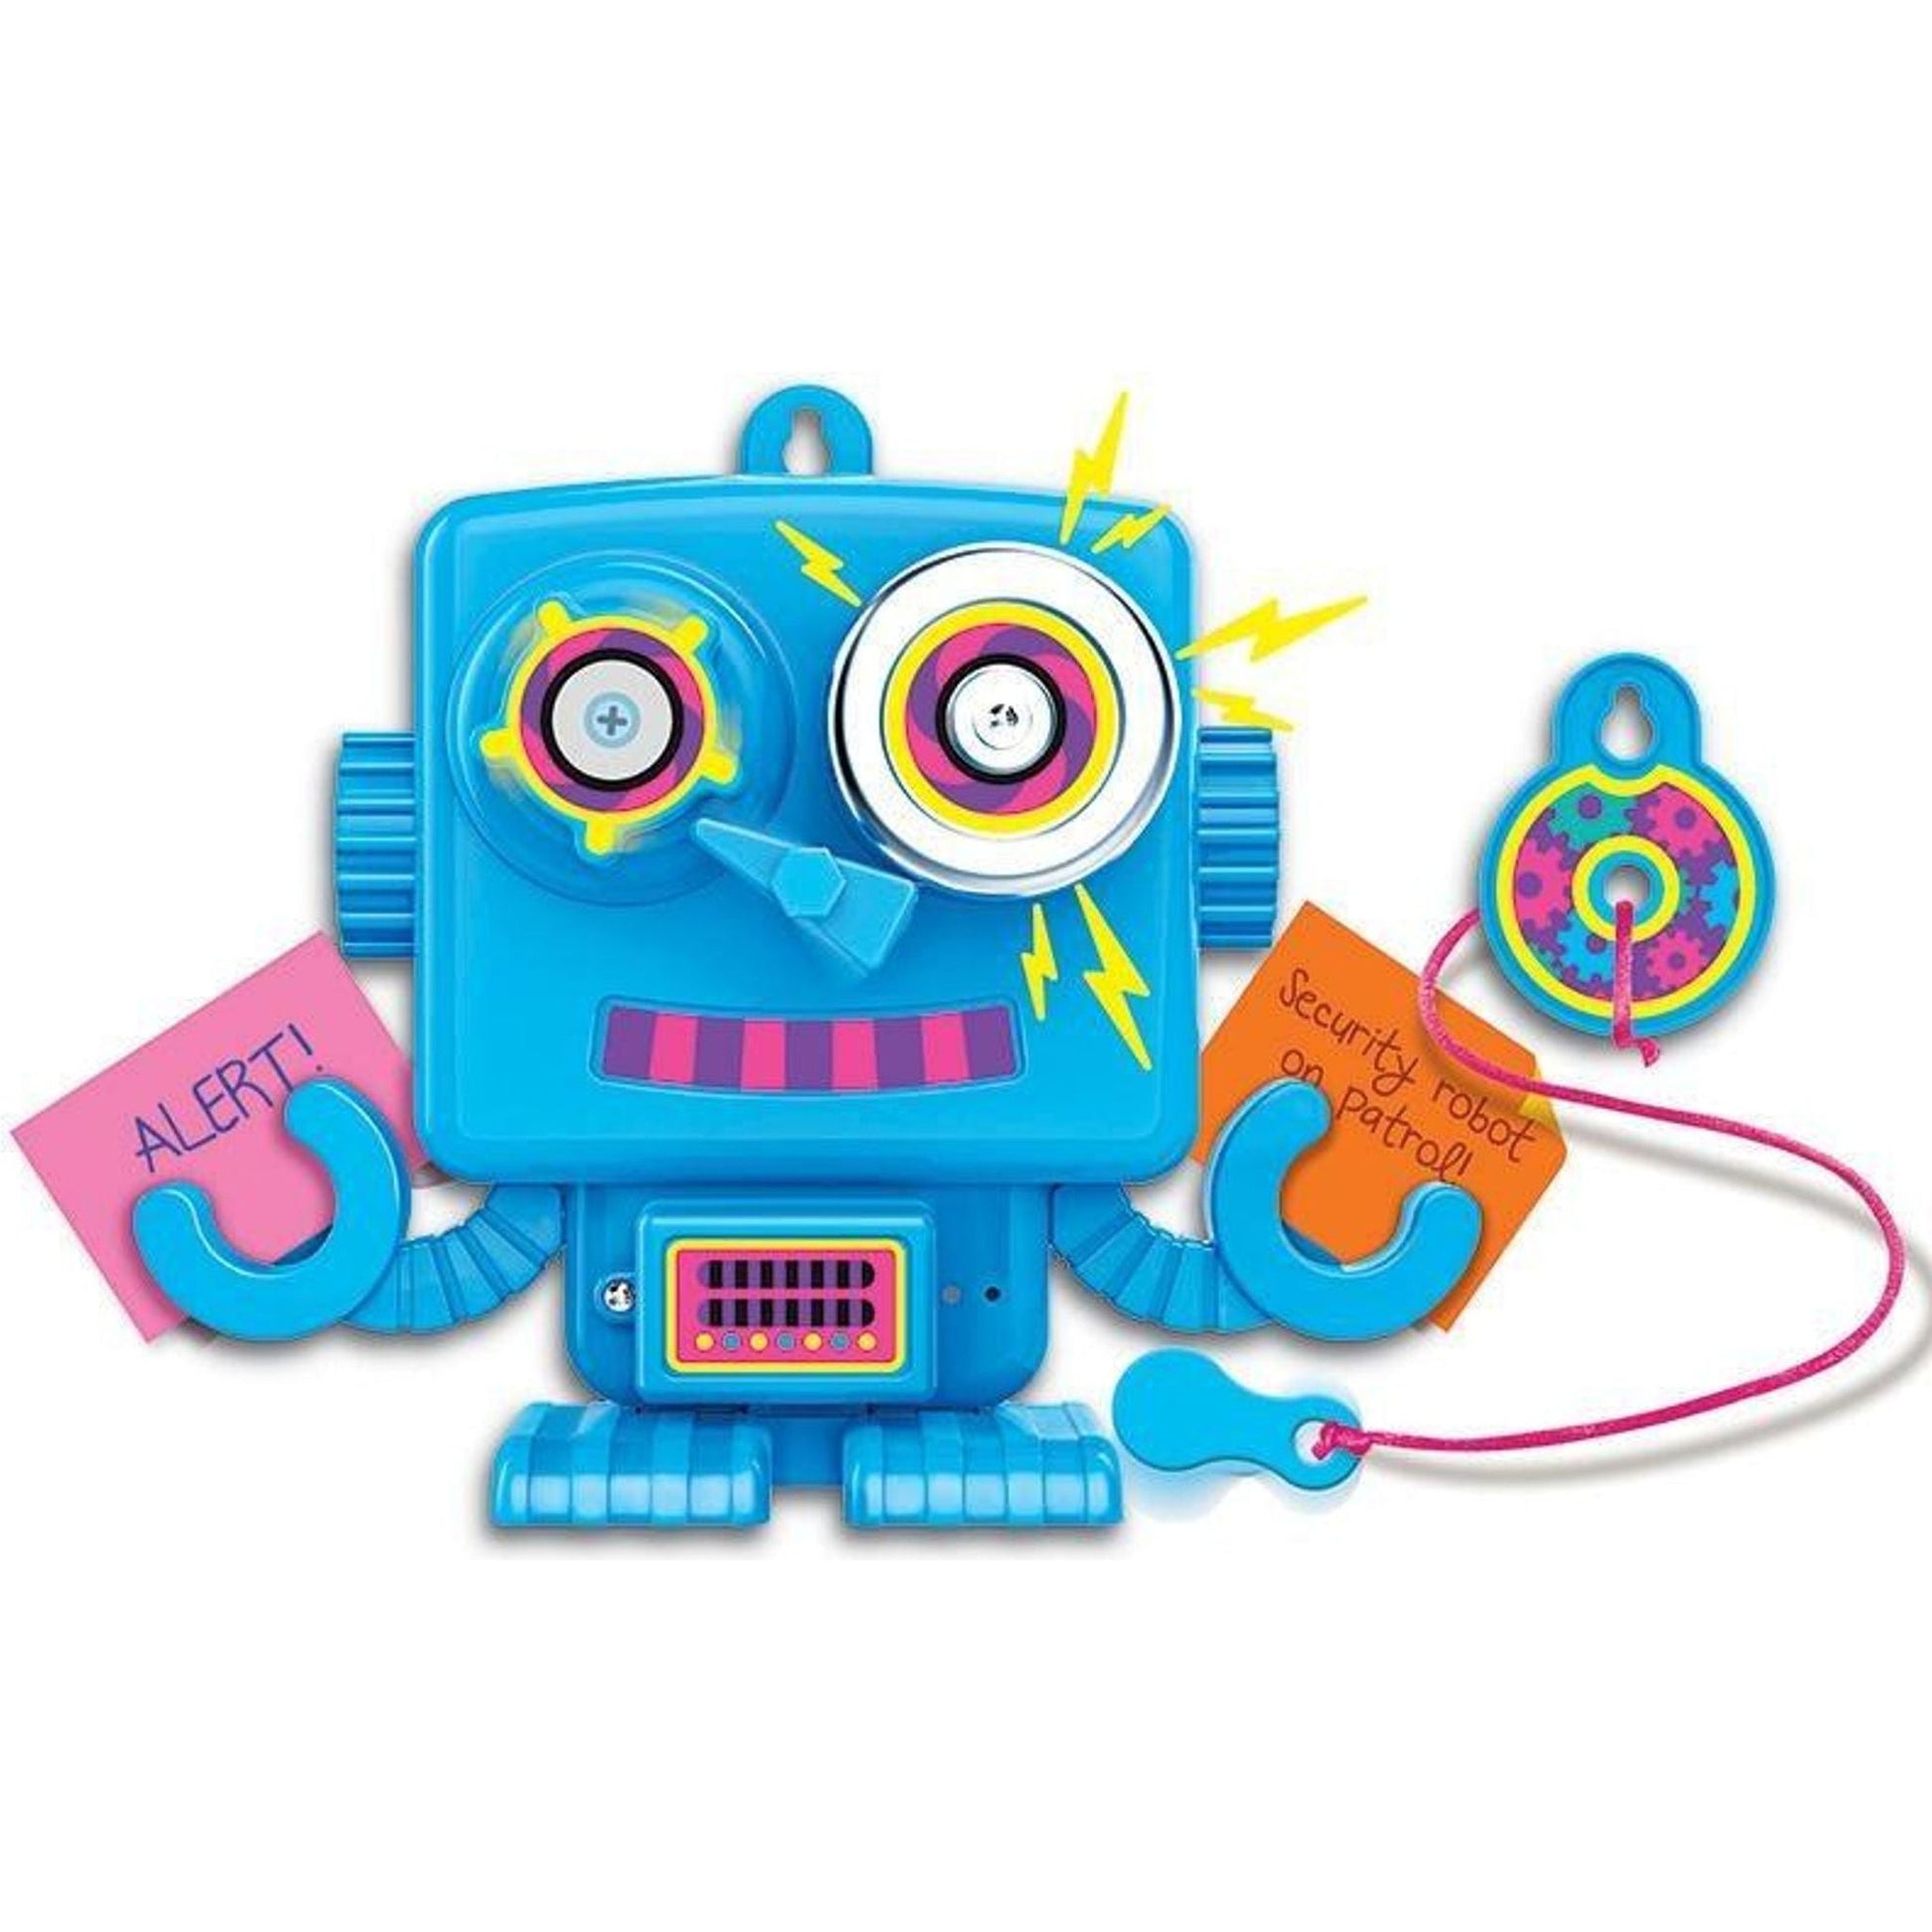 STEAM Powered Kids: Intruder Alarm Robot - Toybox Tales